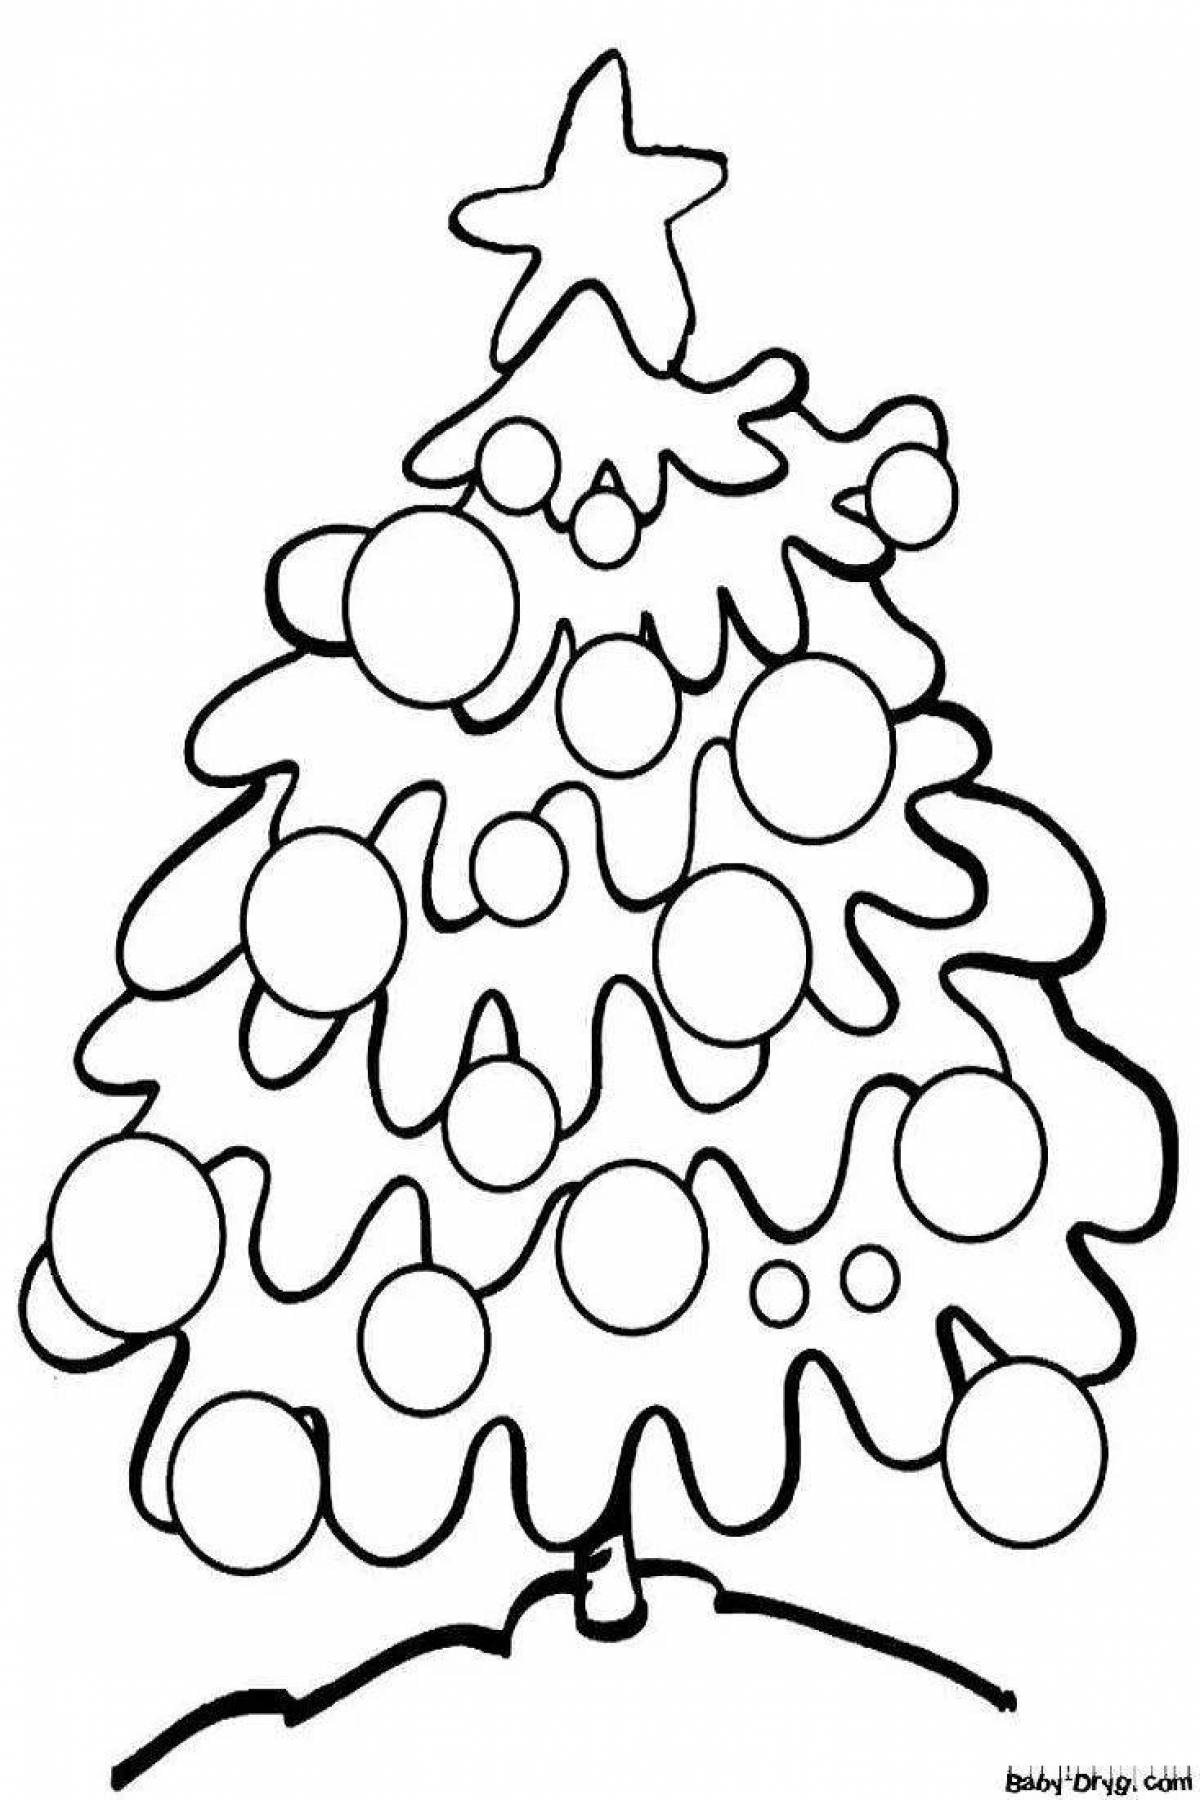 Забавный рисунок рождественской елки для детей